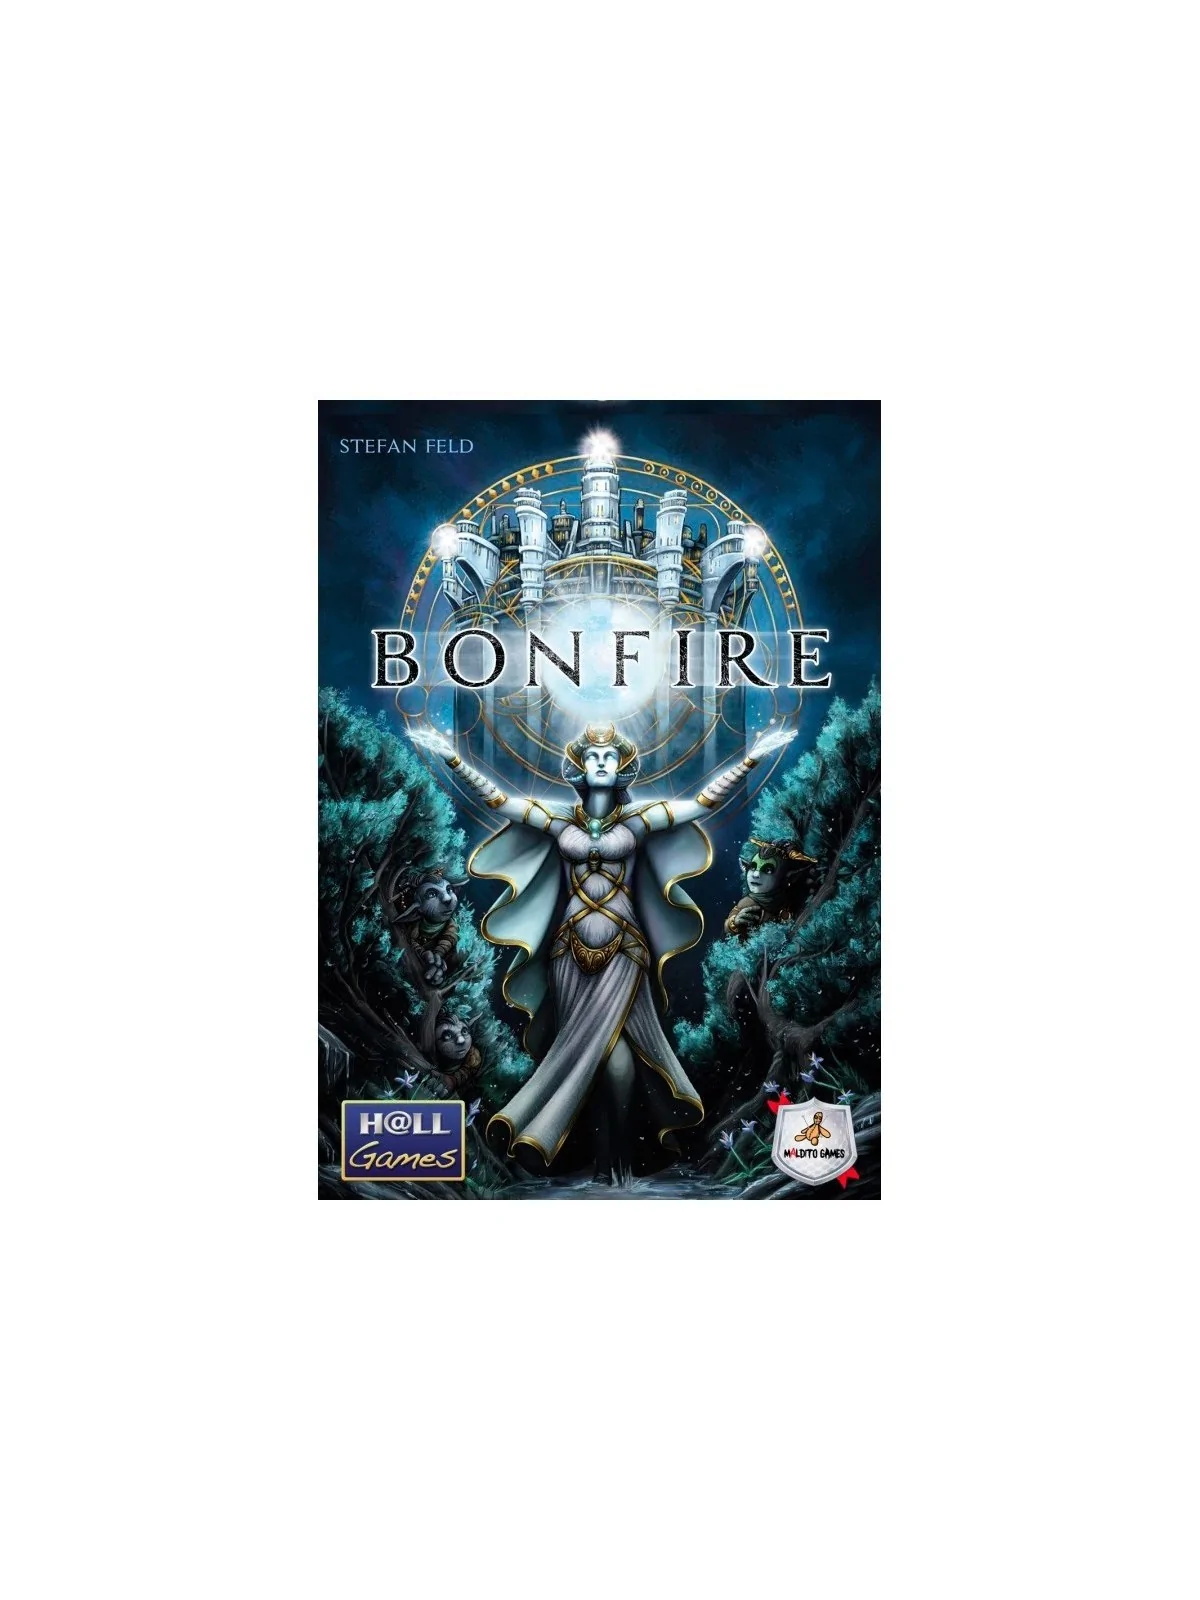 Comprar Bonfire barato al mejor precio 45,00 € de Maldito Games